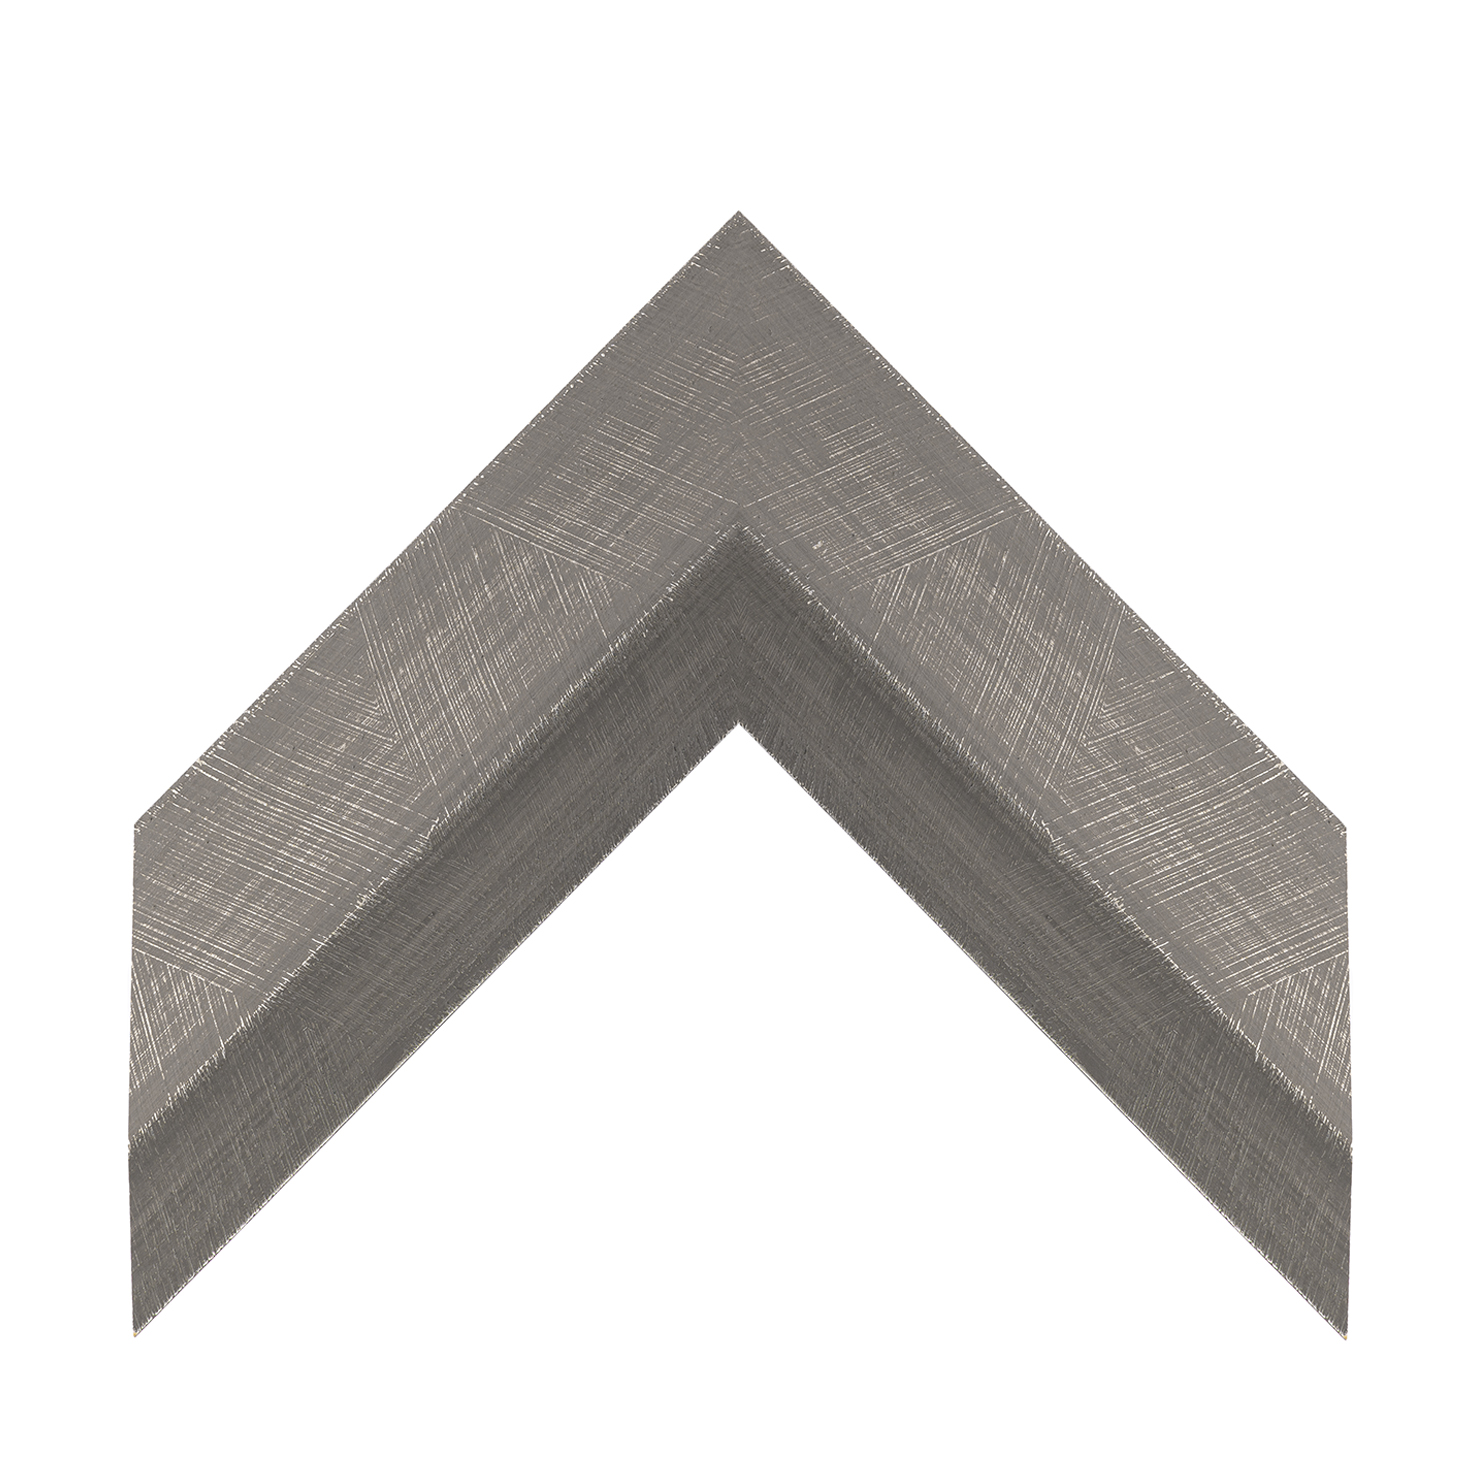 cornice legno ayous sagomata grigio antico manuale | Albor